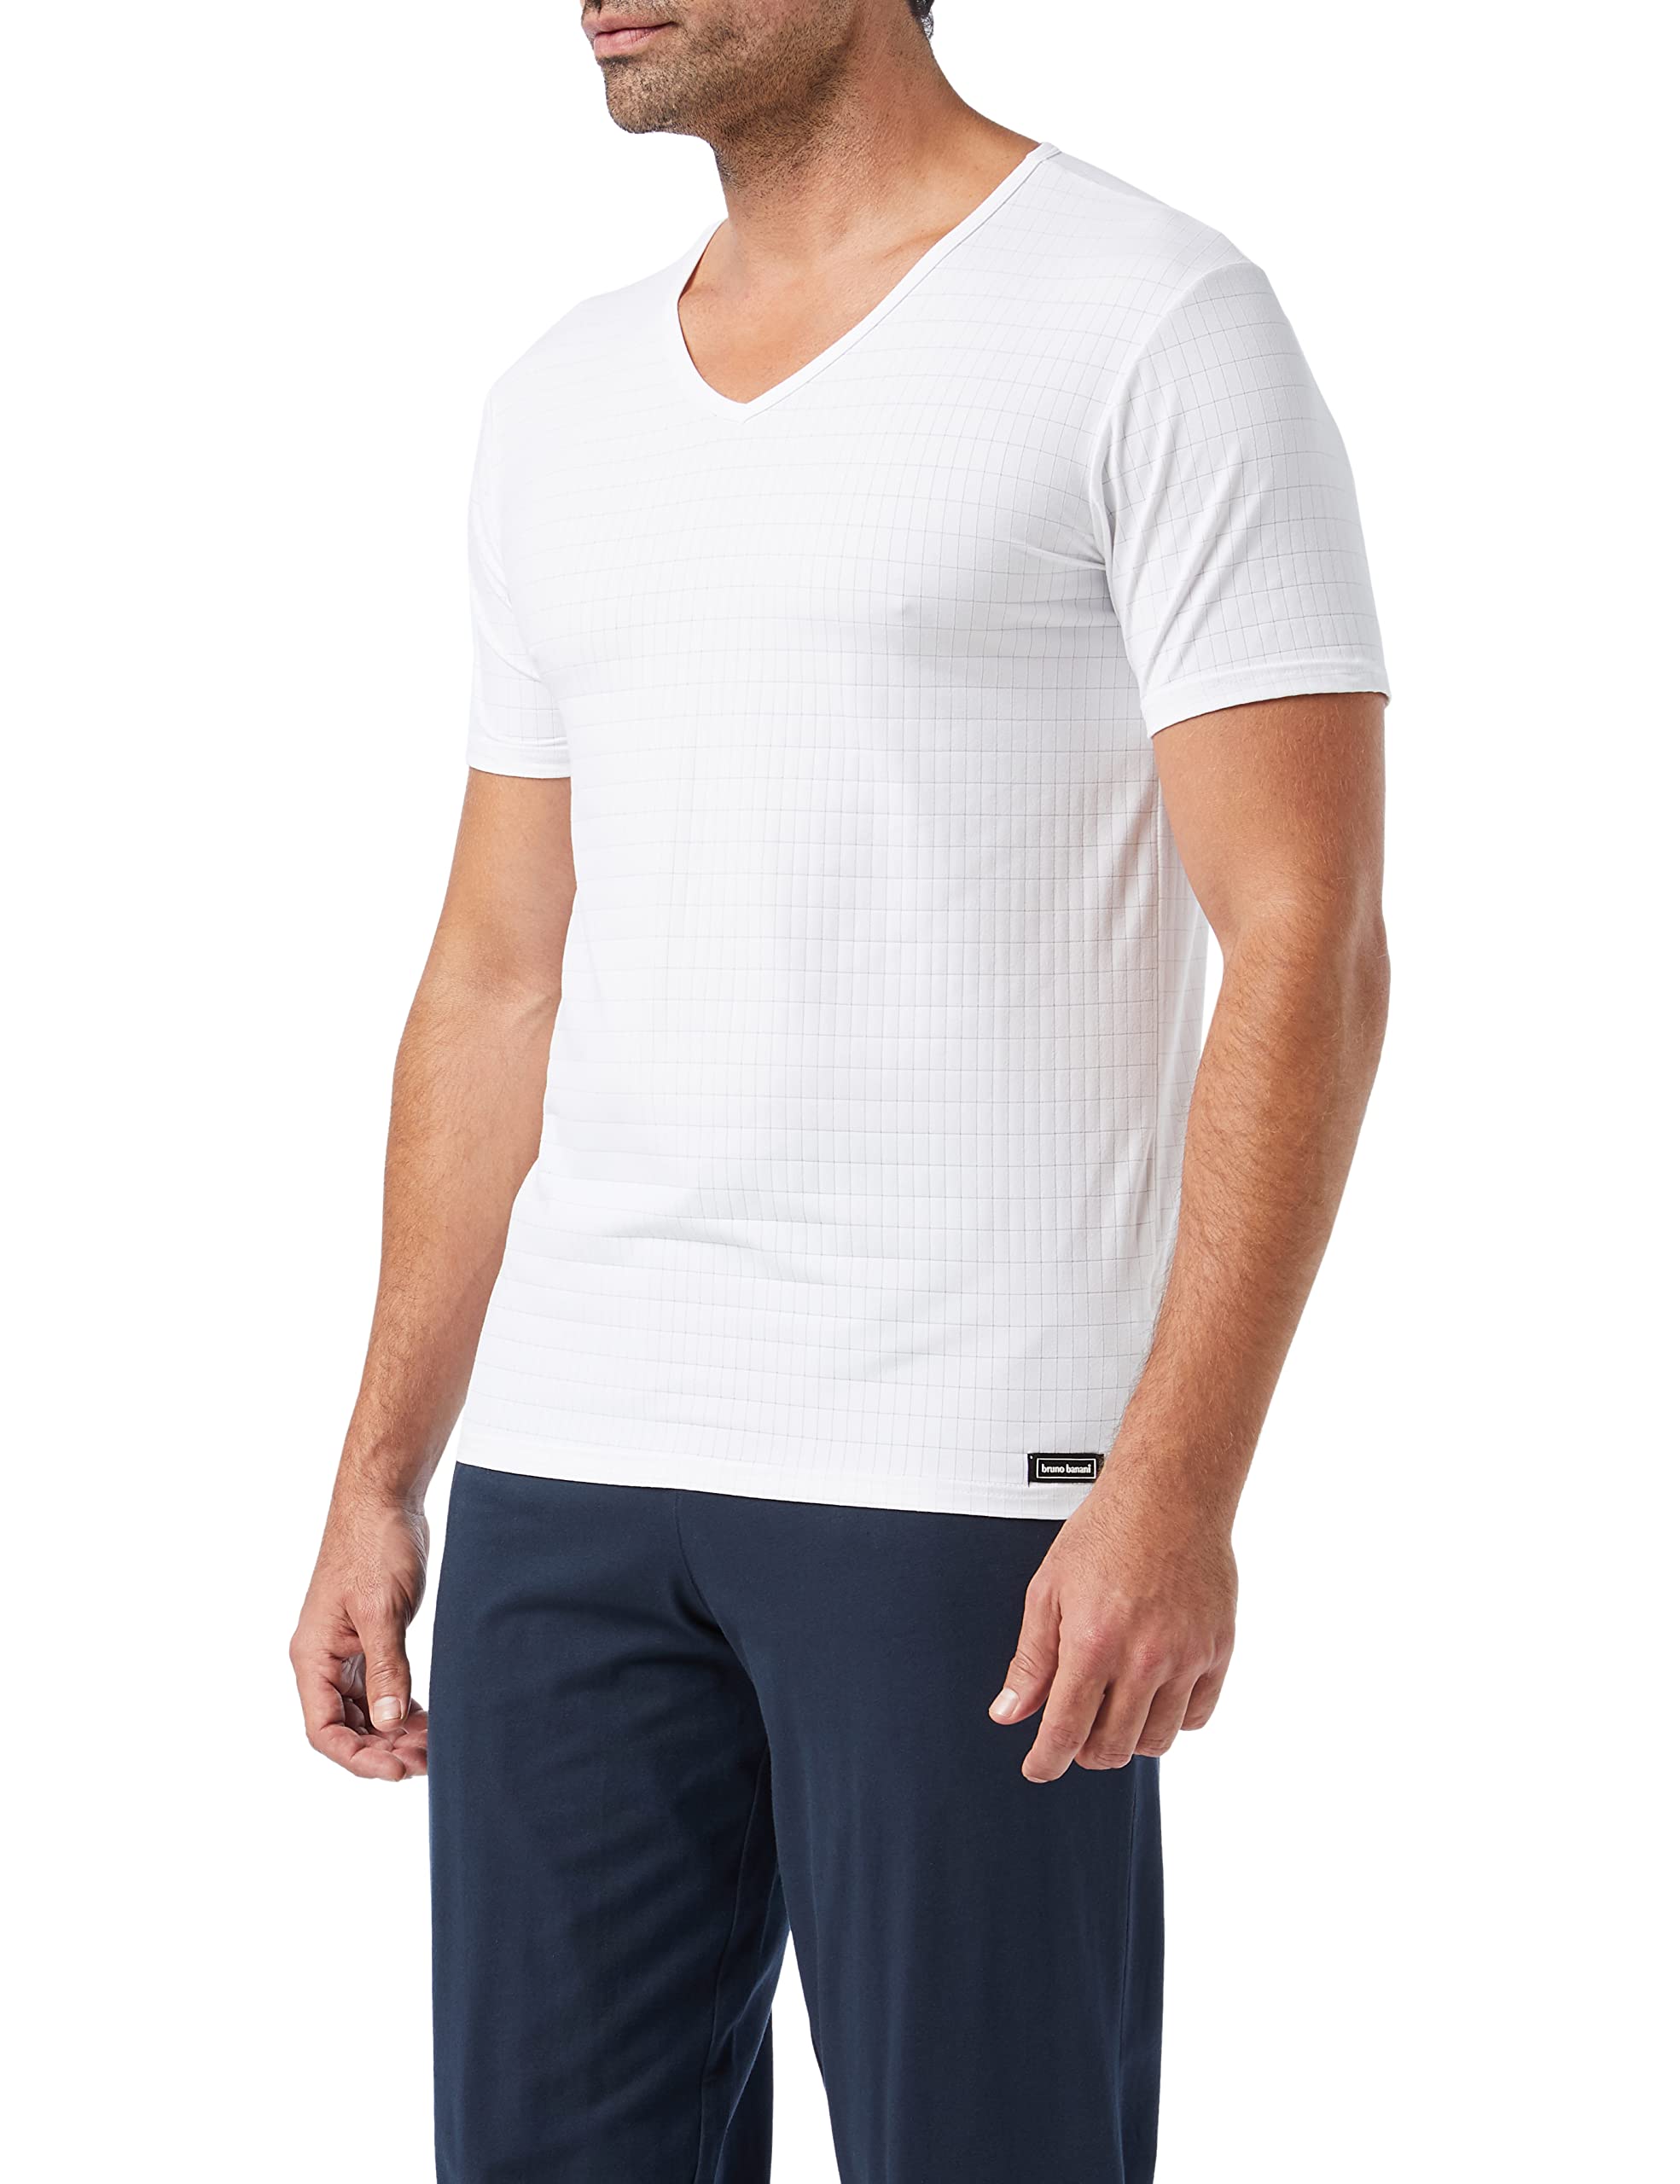 bruno banani Herren V-Shirt Check Line 2.0 Unterhemd, Weiß (Weiß Karo 1612), Medium (Herstellergröße: M)